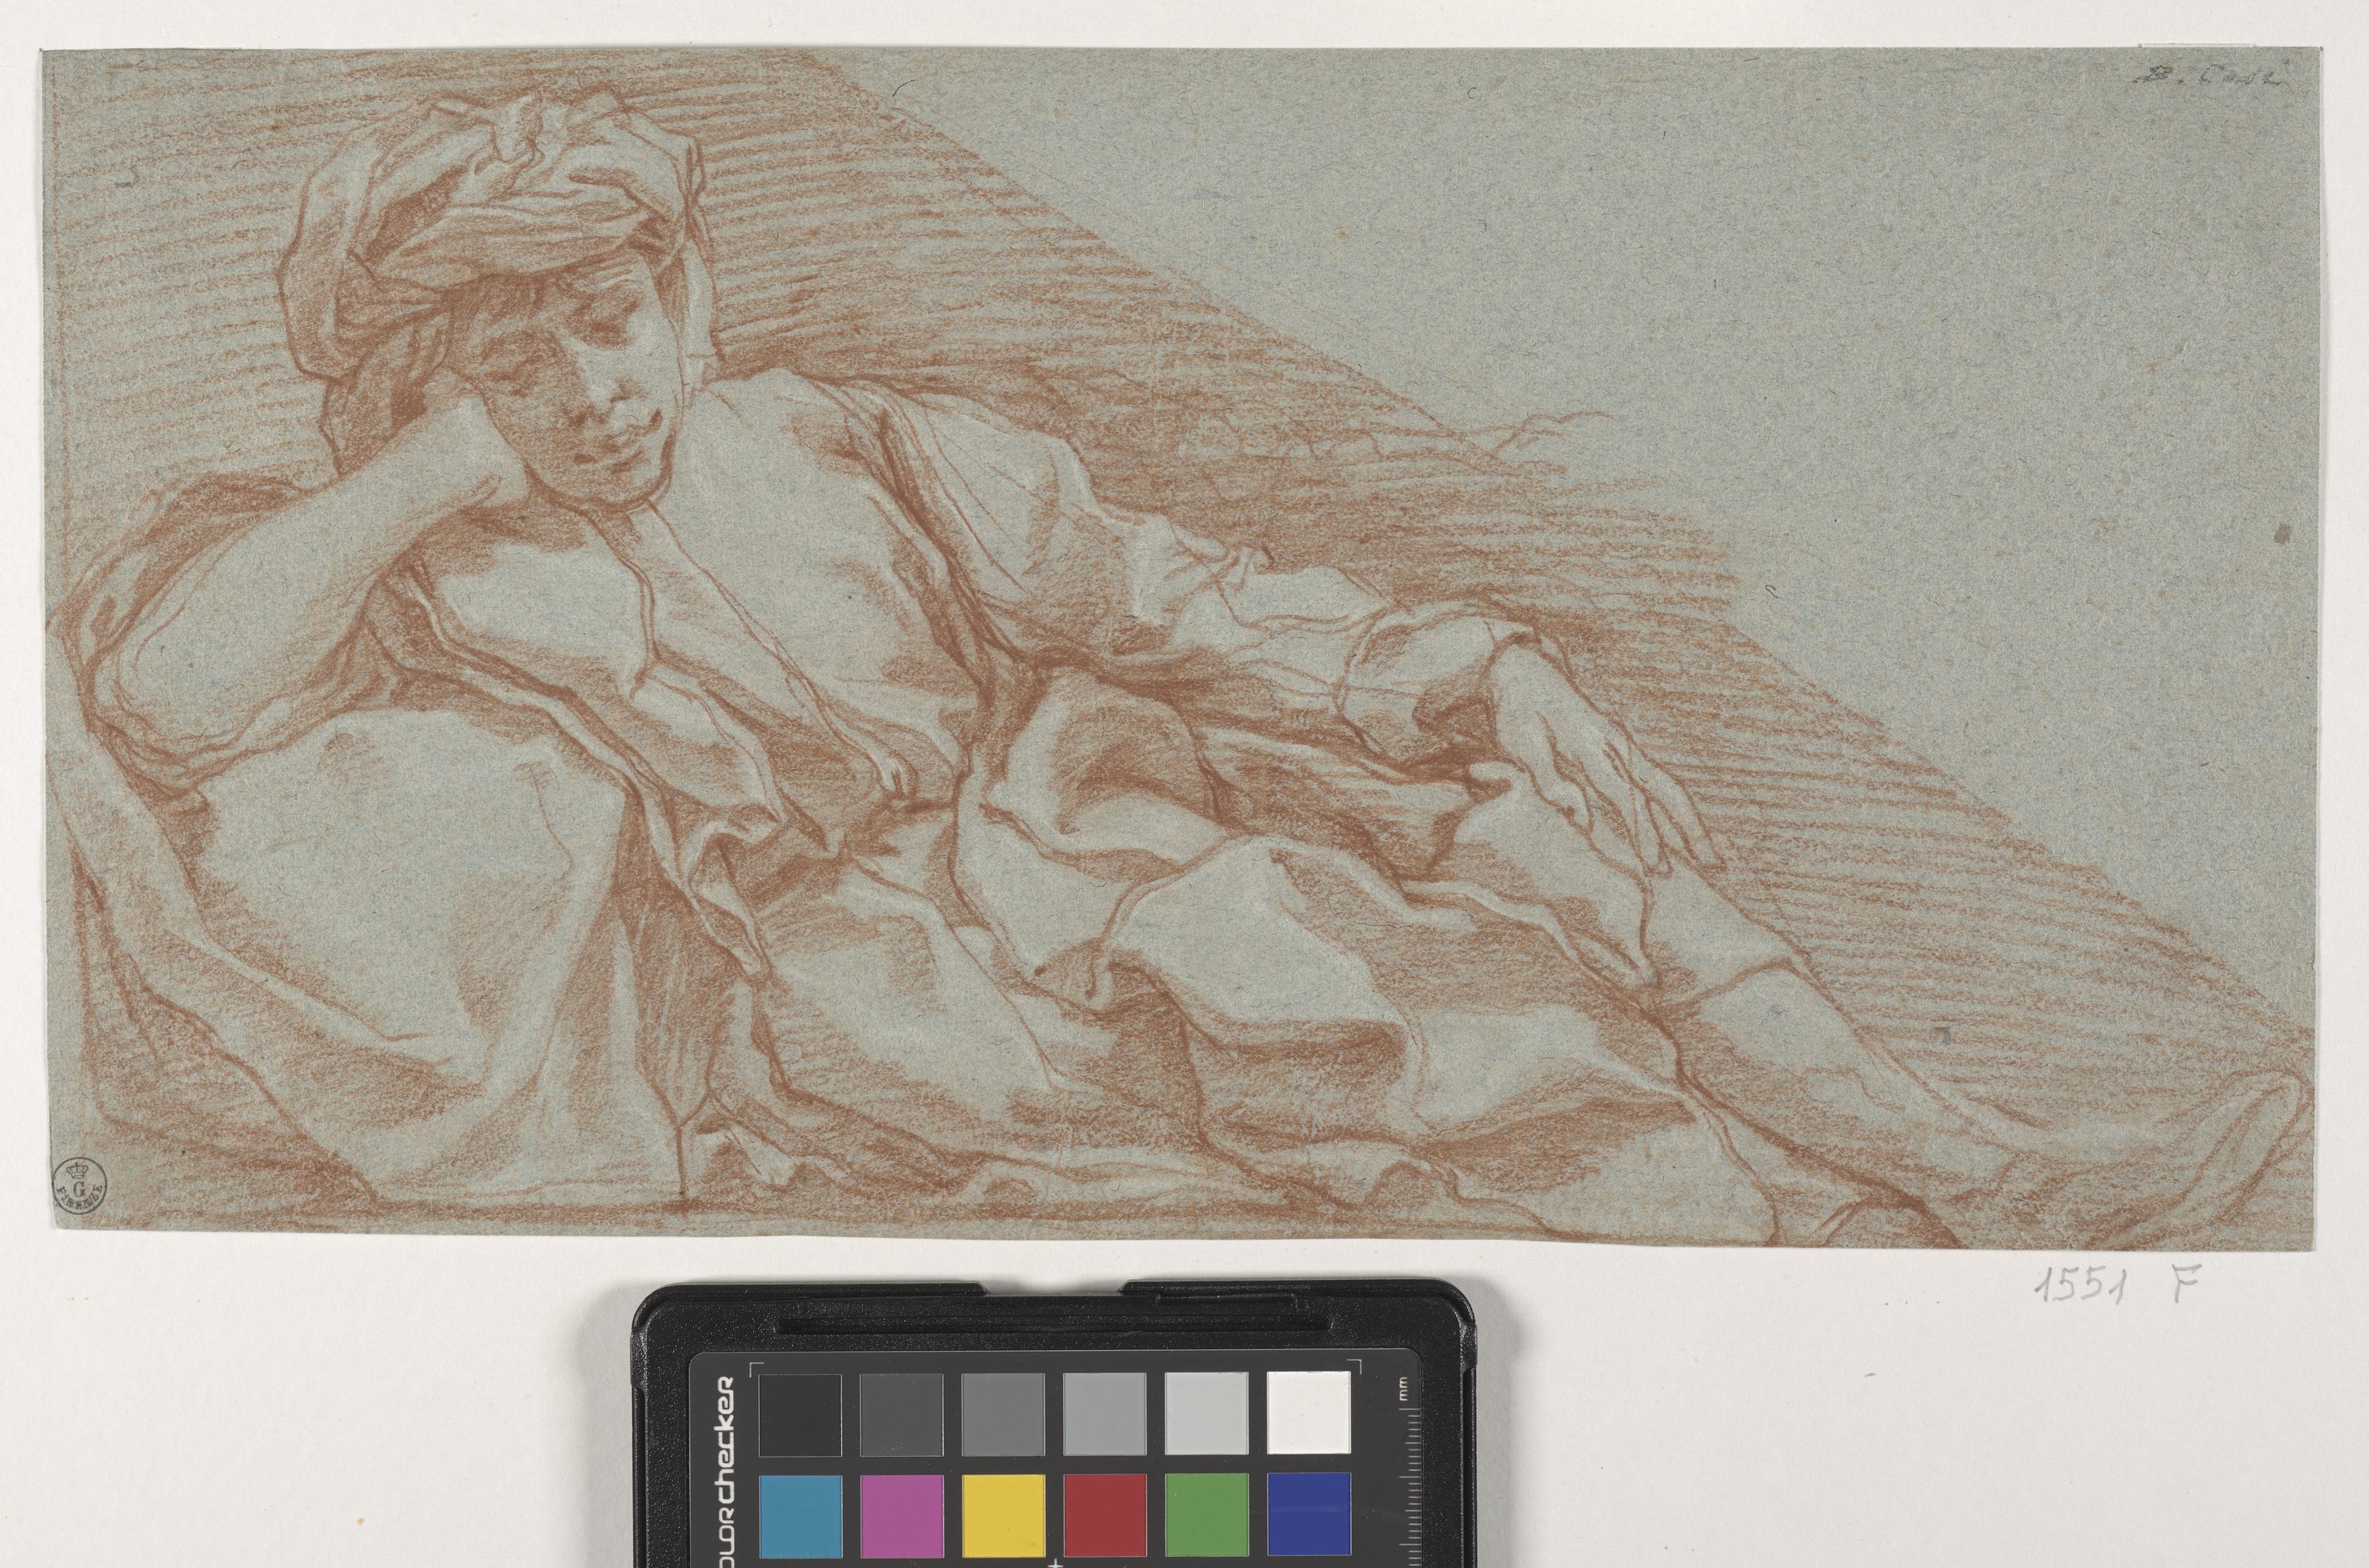 Studio di giovane sdraiato sul fianco sinistro (disegno) di Cesi Bartolomeo (fine/ inizio XVI/ XVII)